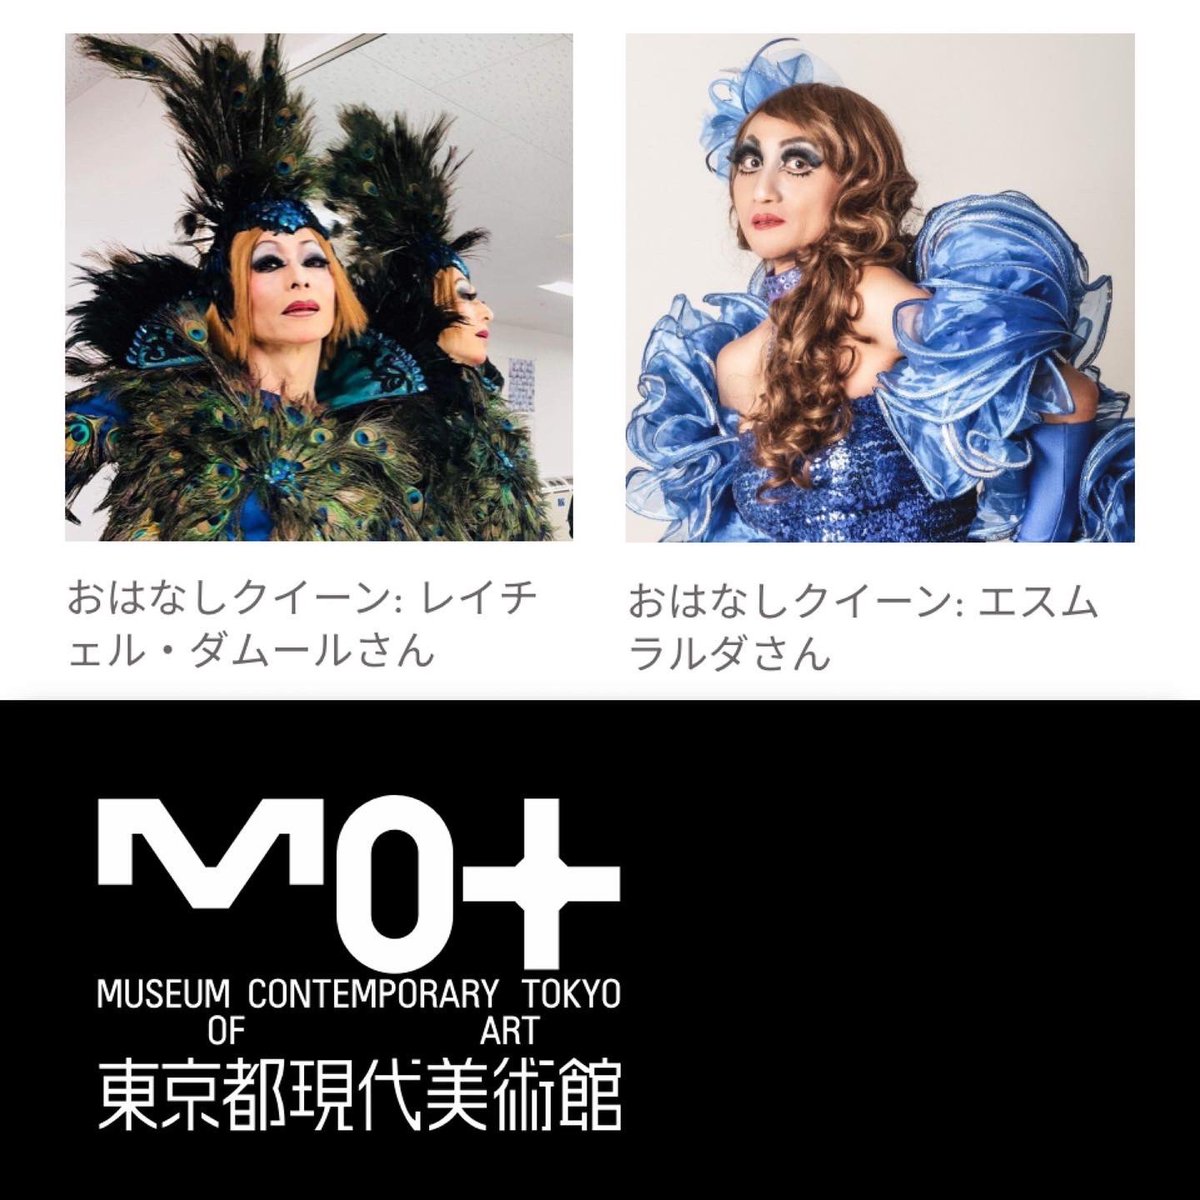 拡散希望🌈2023/7/23(日曜) #東京都現代美術館 で #ドラァグクイーンストーリーアワー を開催。抽選申込の期限は7/3(月曜)。詳しくはmot-art-museum.jp/events/2023/06…『あ、共感とかじゃなくて』展の関連イベントです。#dqsh #dragqueenstoryhour #dsh #dragstoryhour #dqshtokyo #dqsh東京 #絵本読み聞かせ